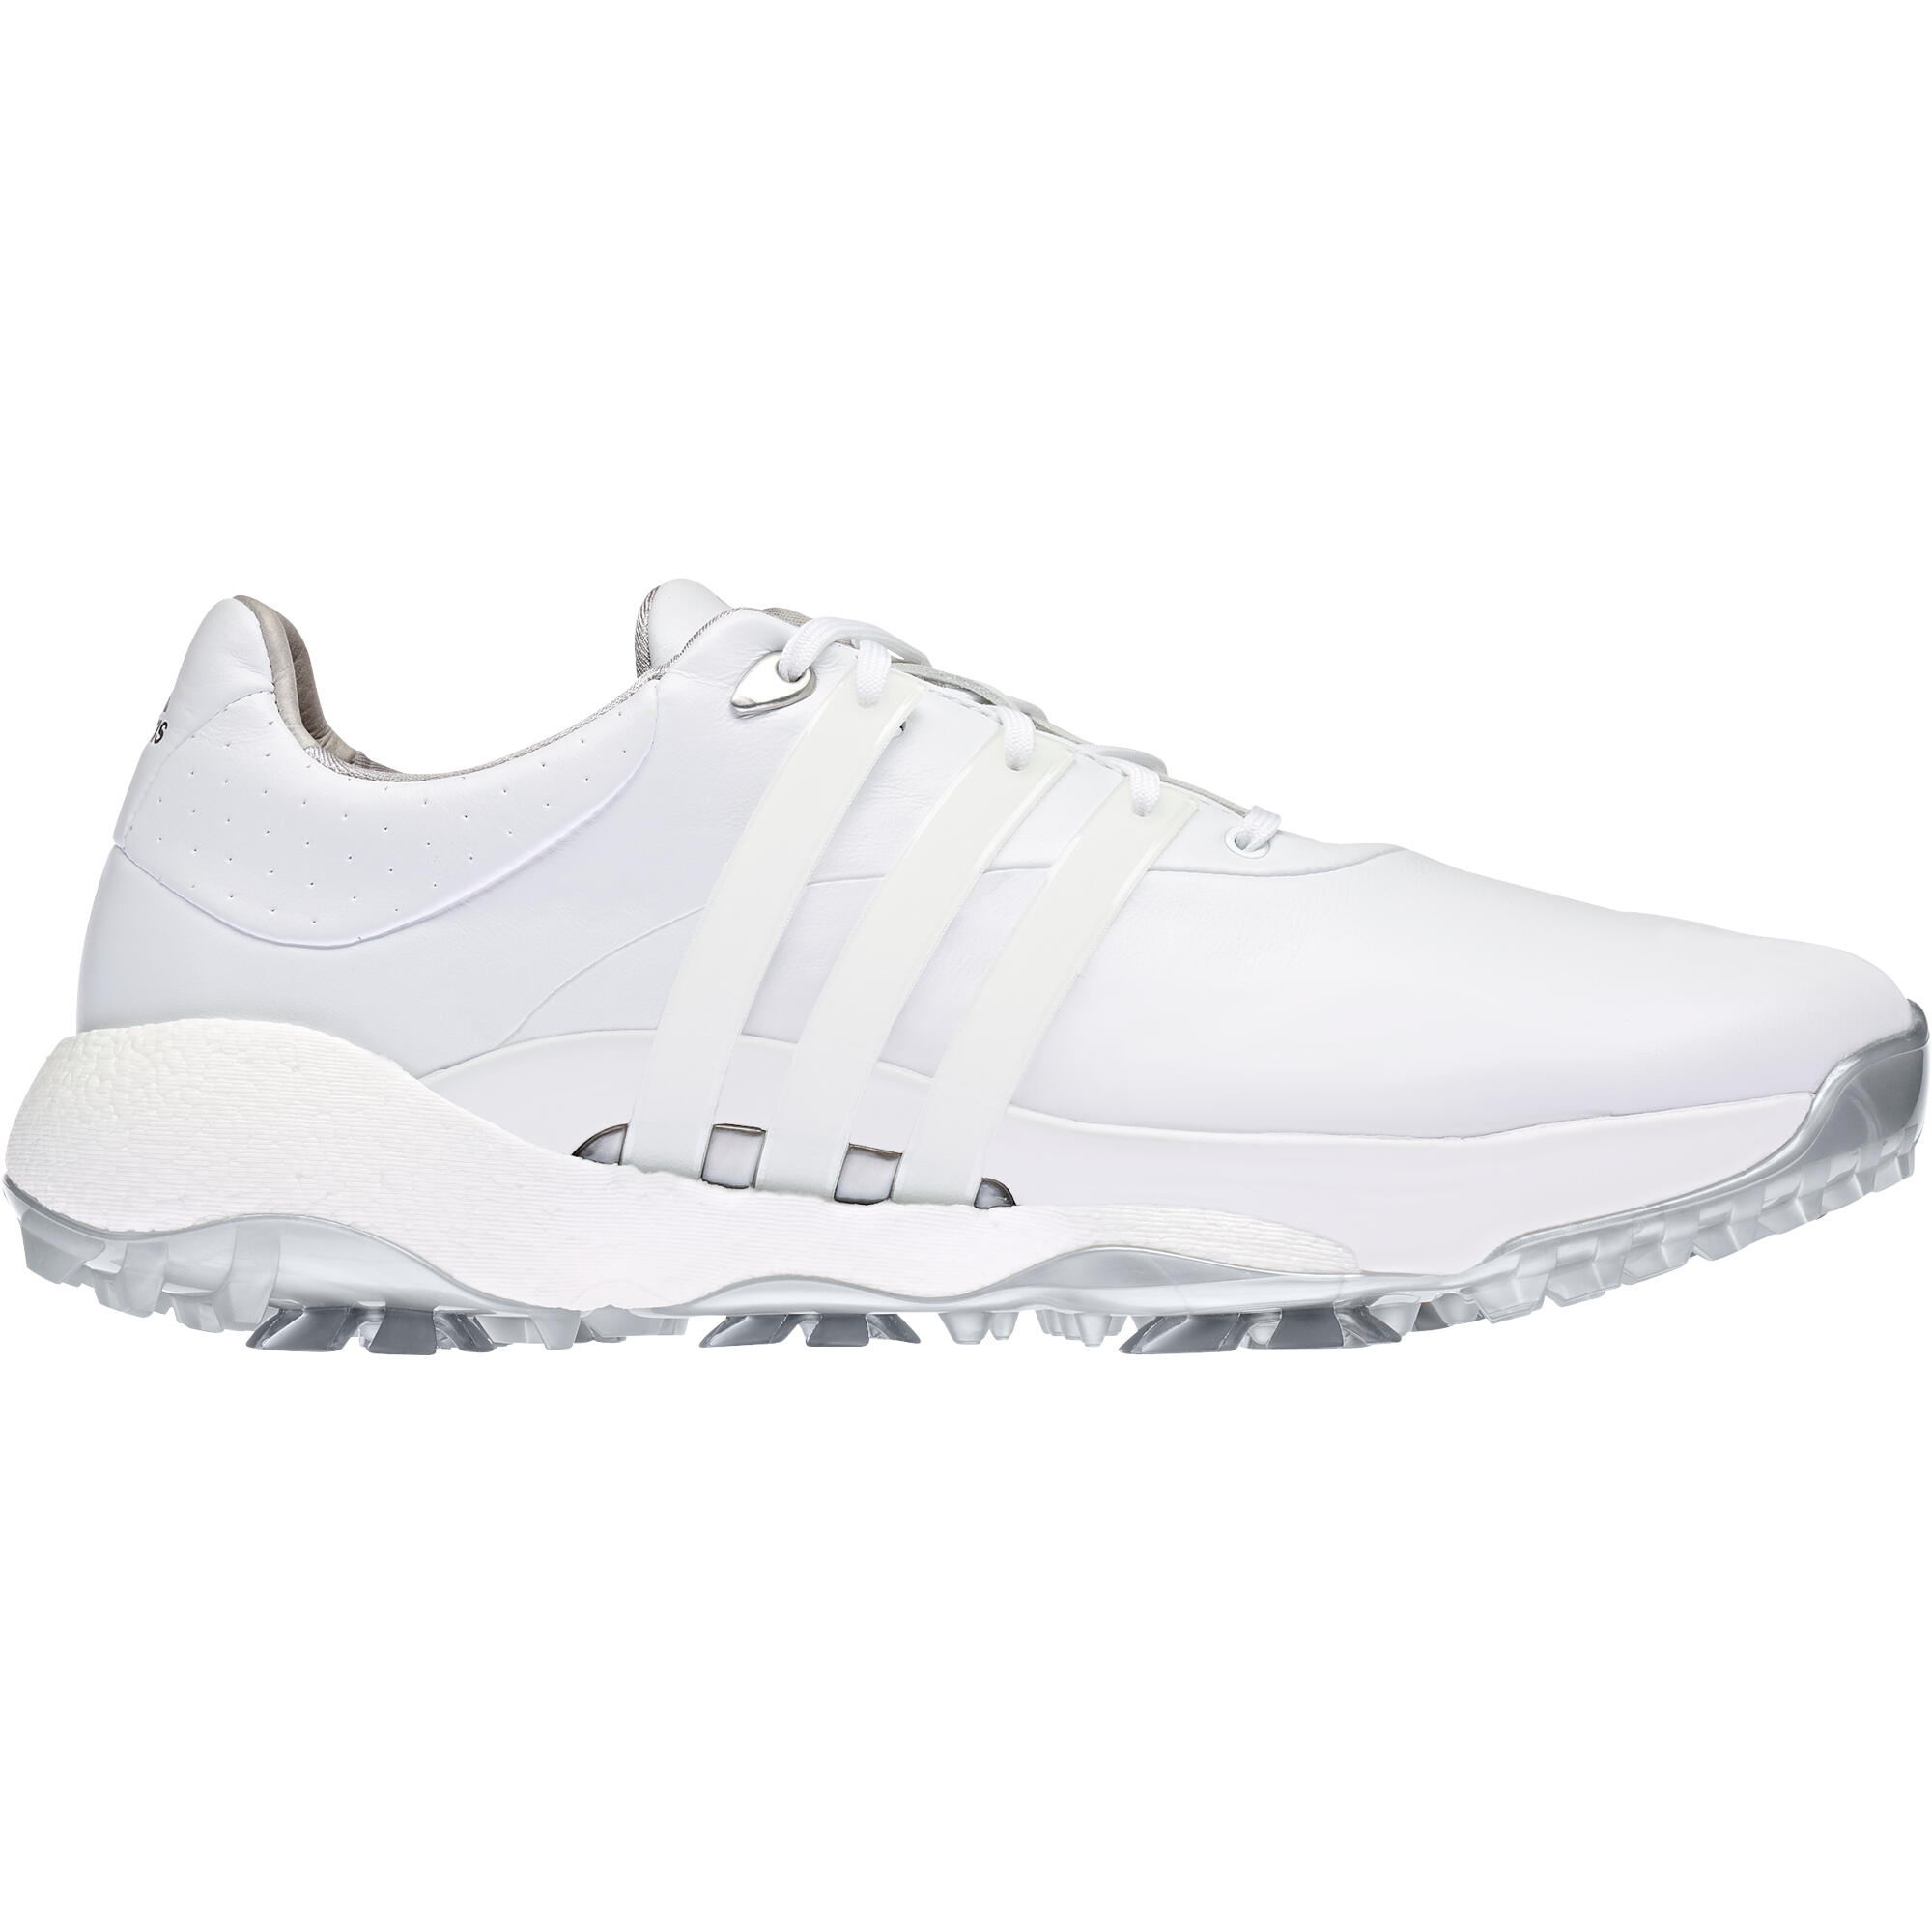 ADIDAS adidas Tour360 22 Golf Shoes - ftwr white